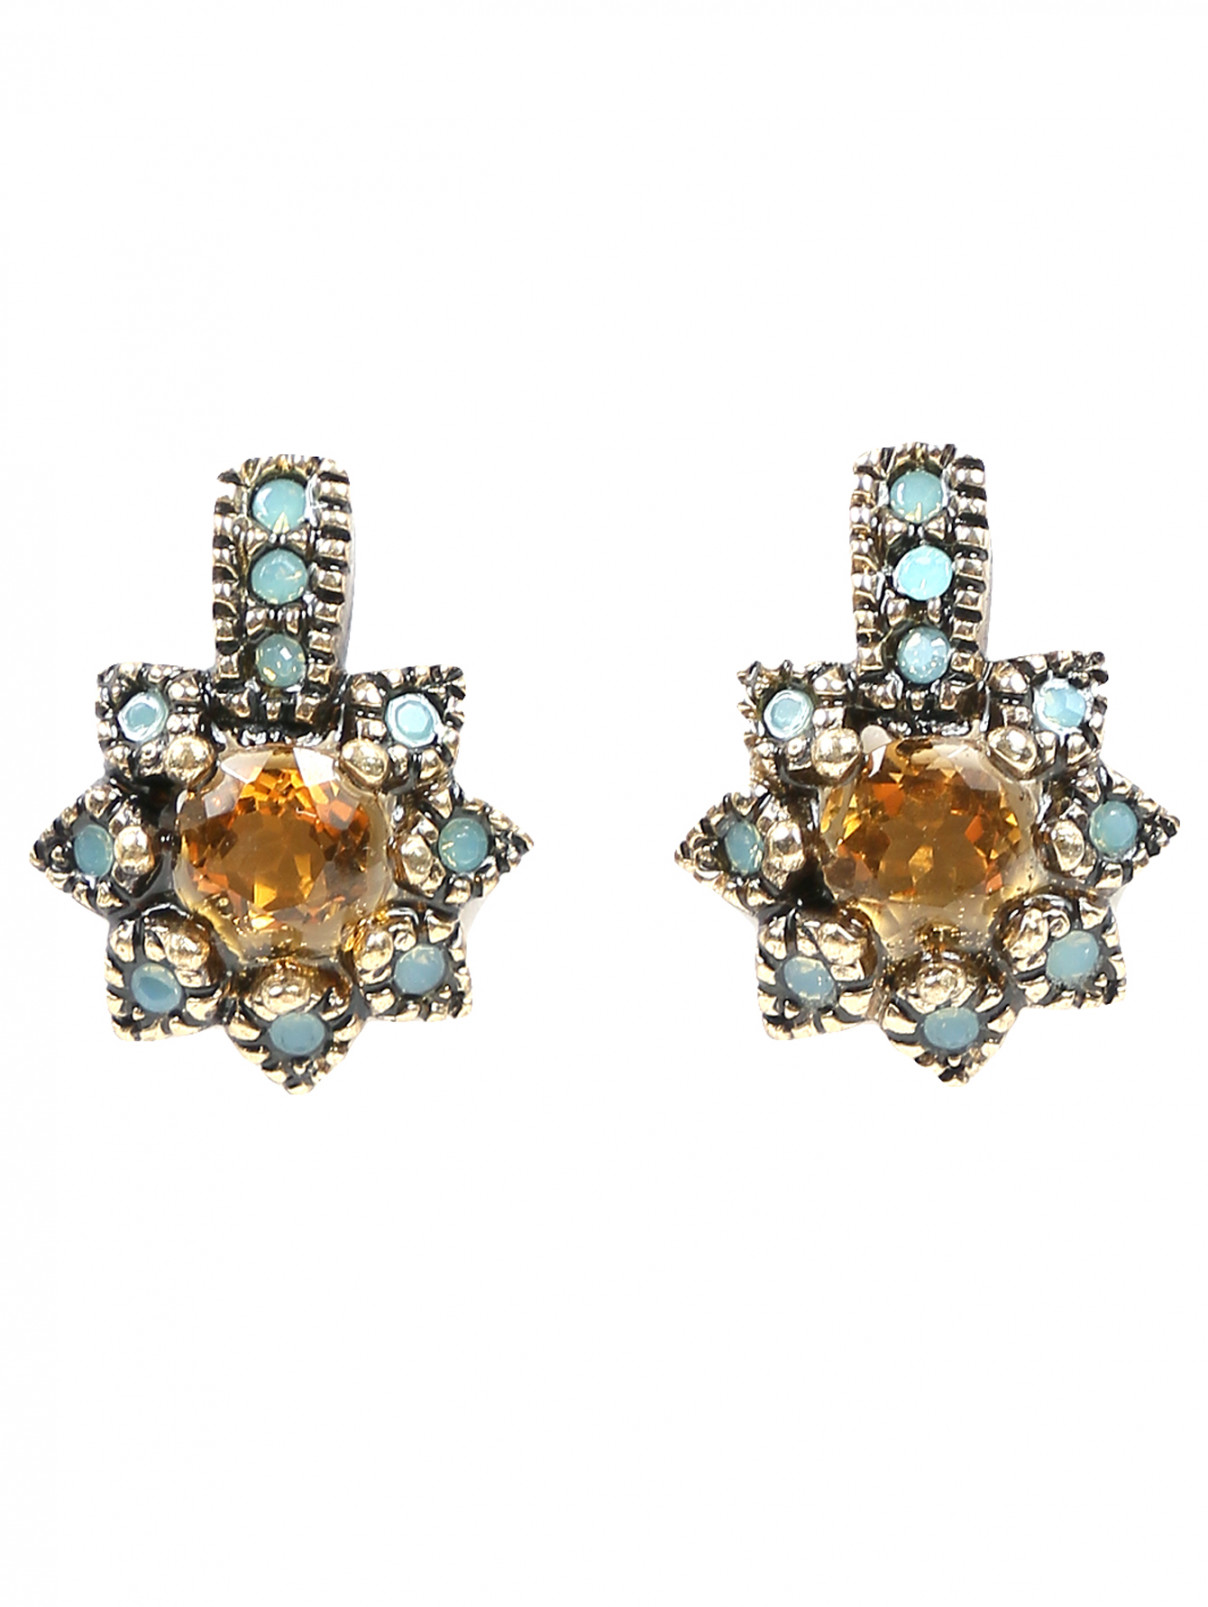 Серьги из металла декорированные кристаллами Look&Took  –  Общий вид  – Цвет:  Золотой